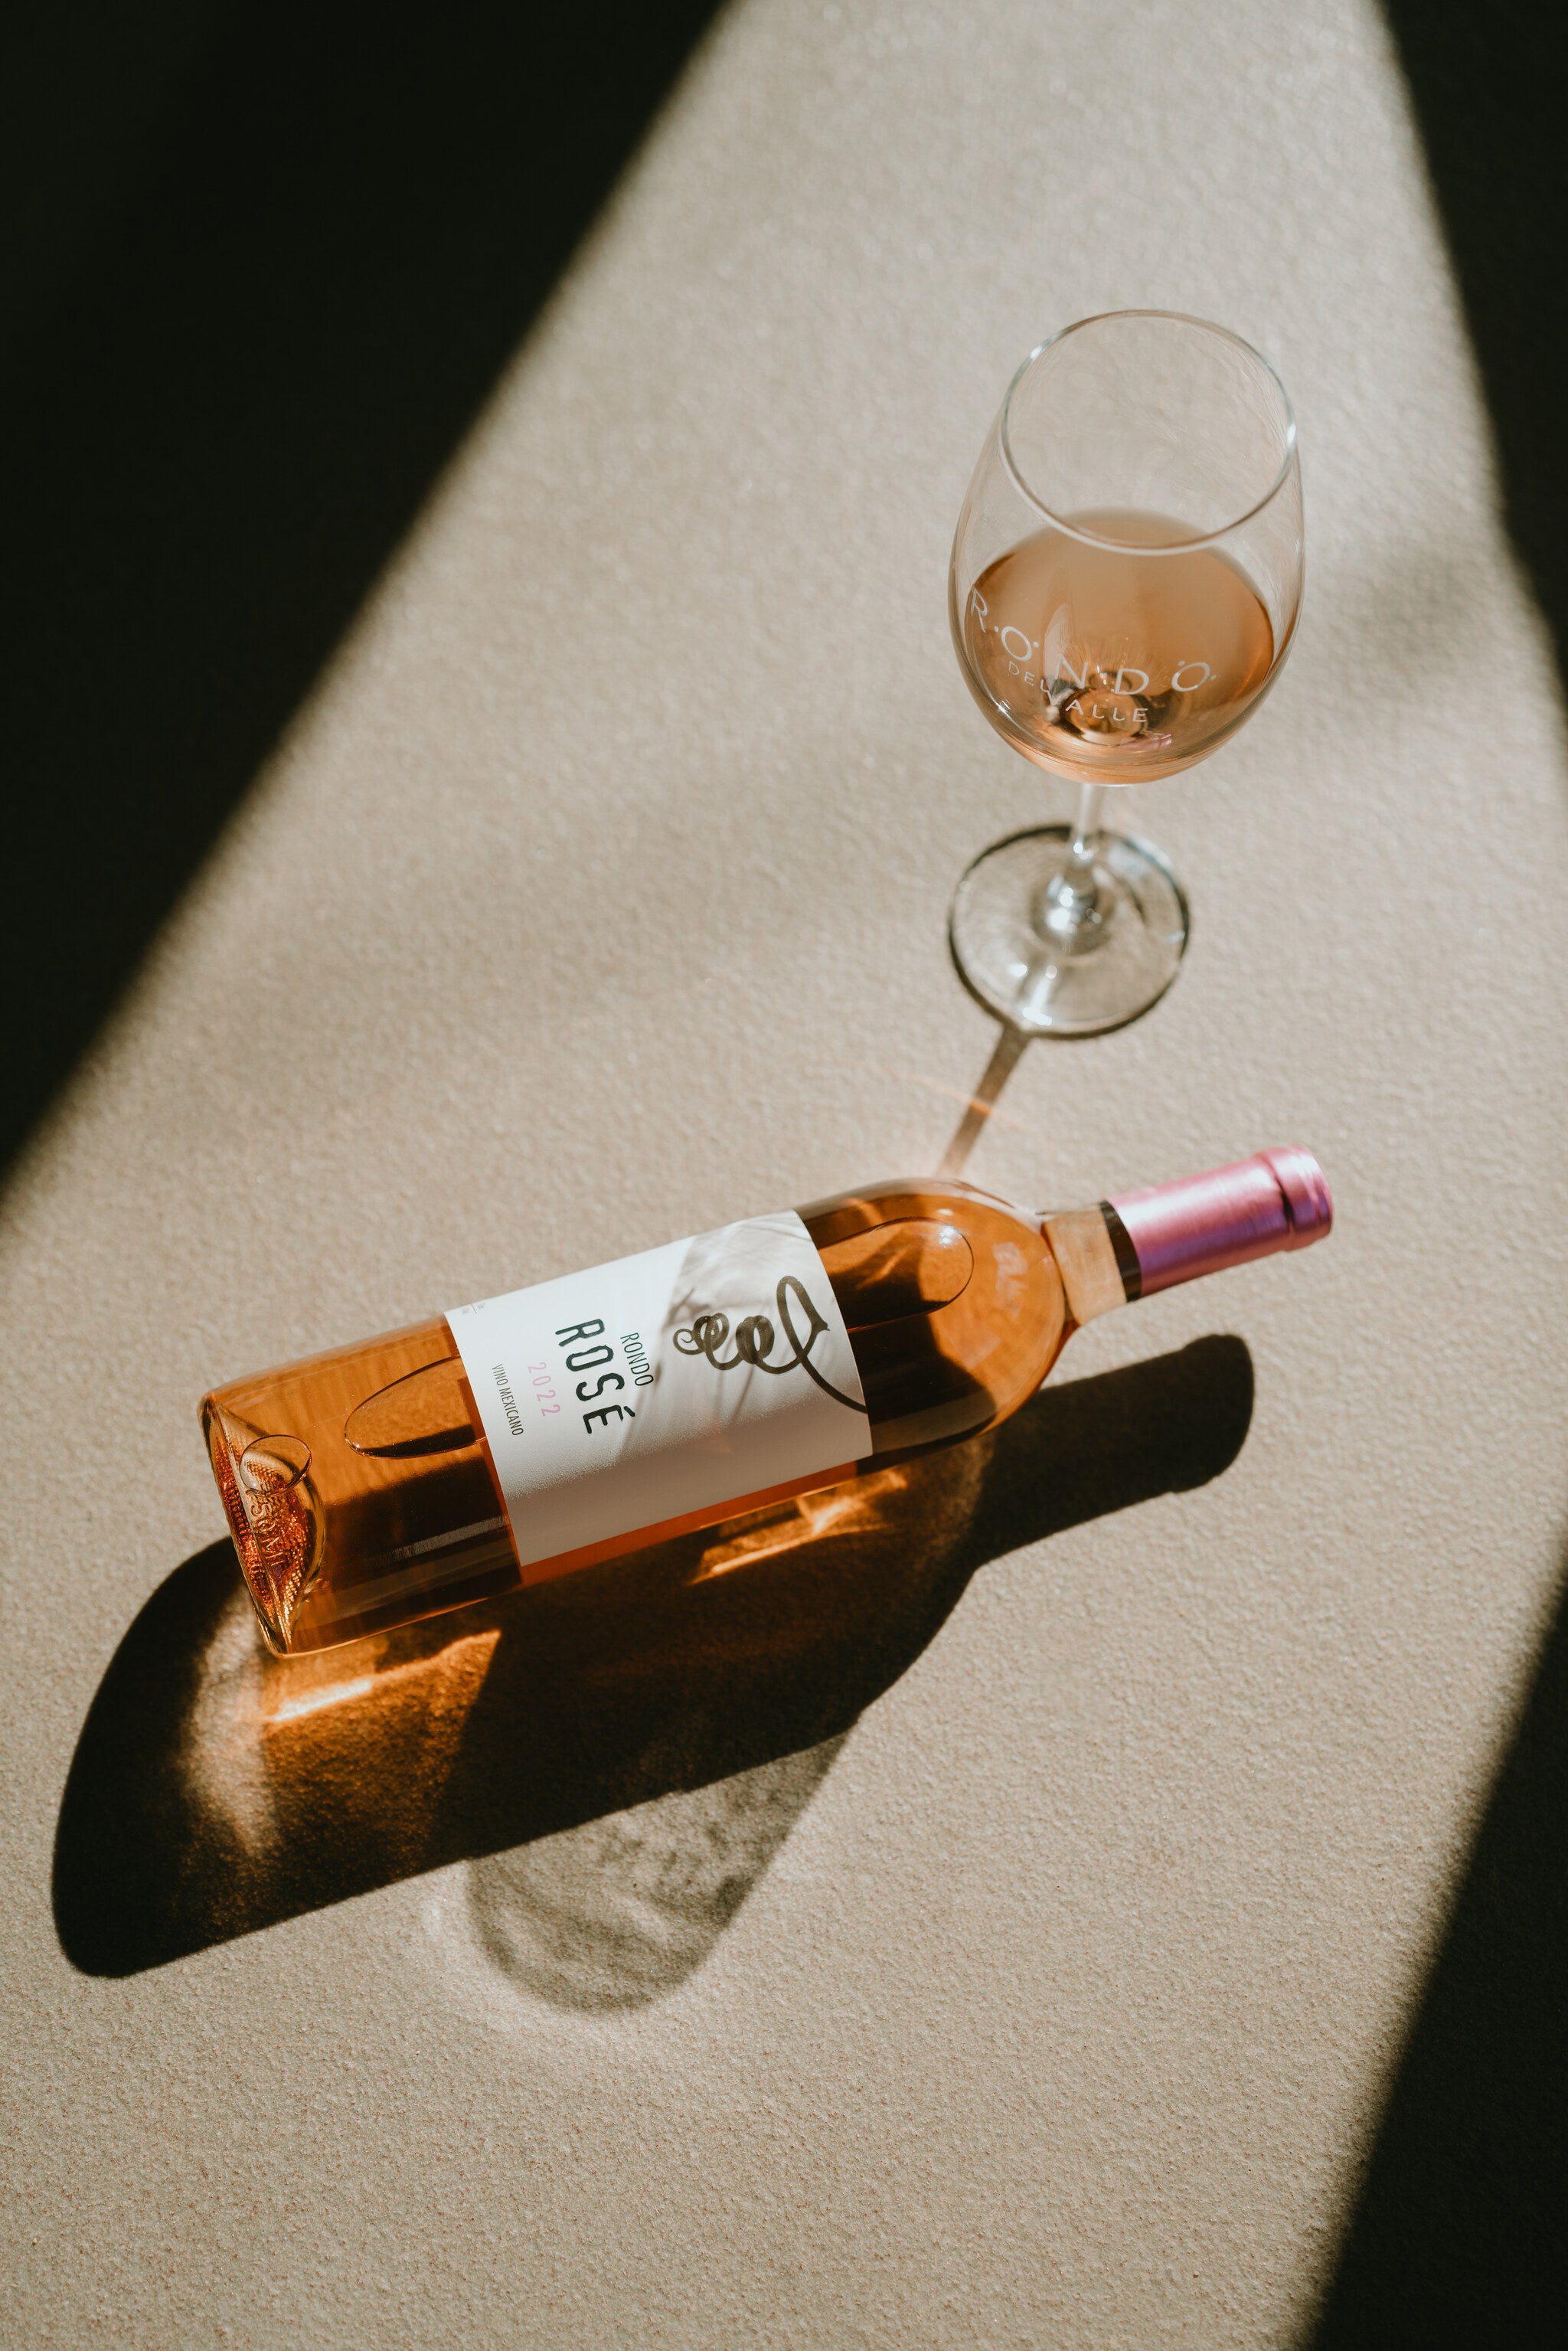 La experiencia de la producción del vino rosado